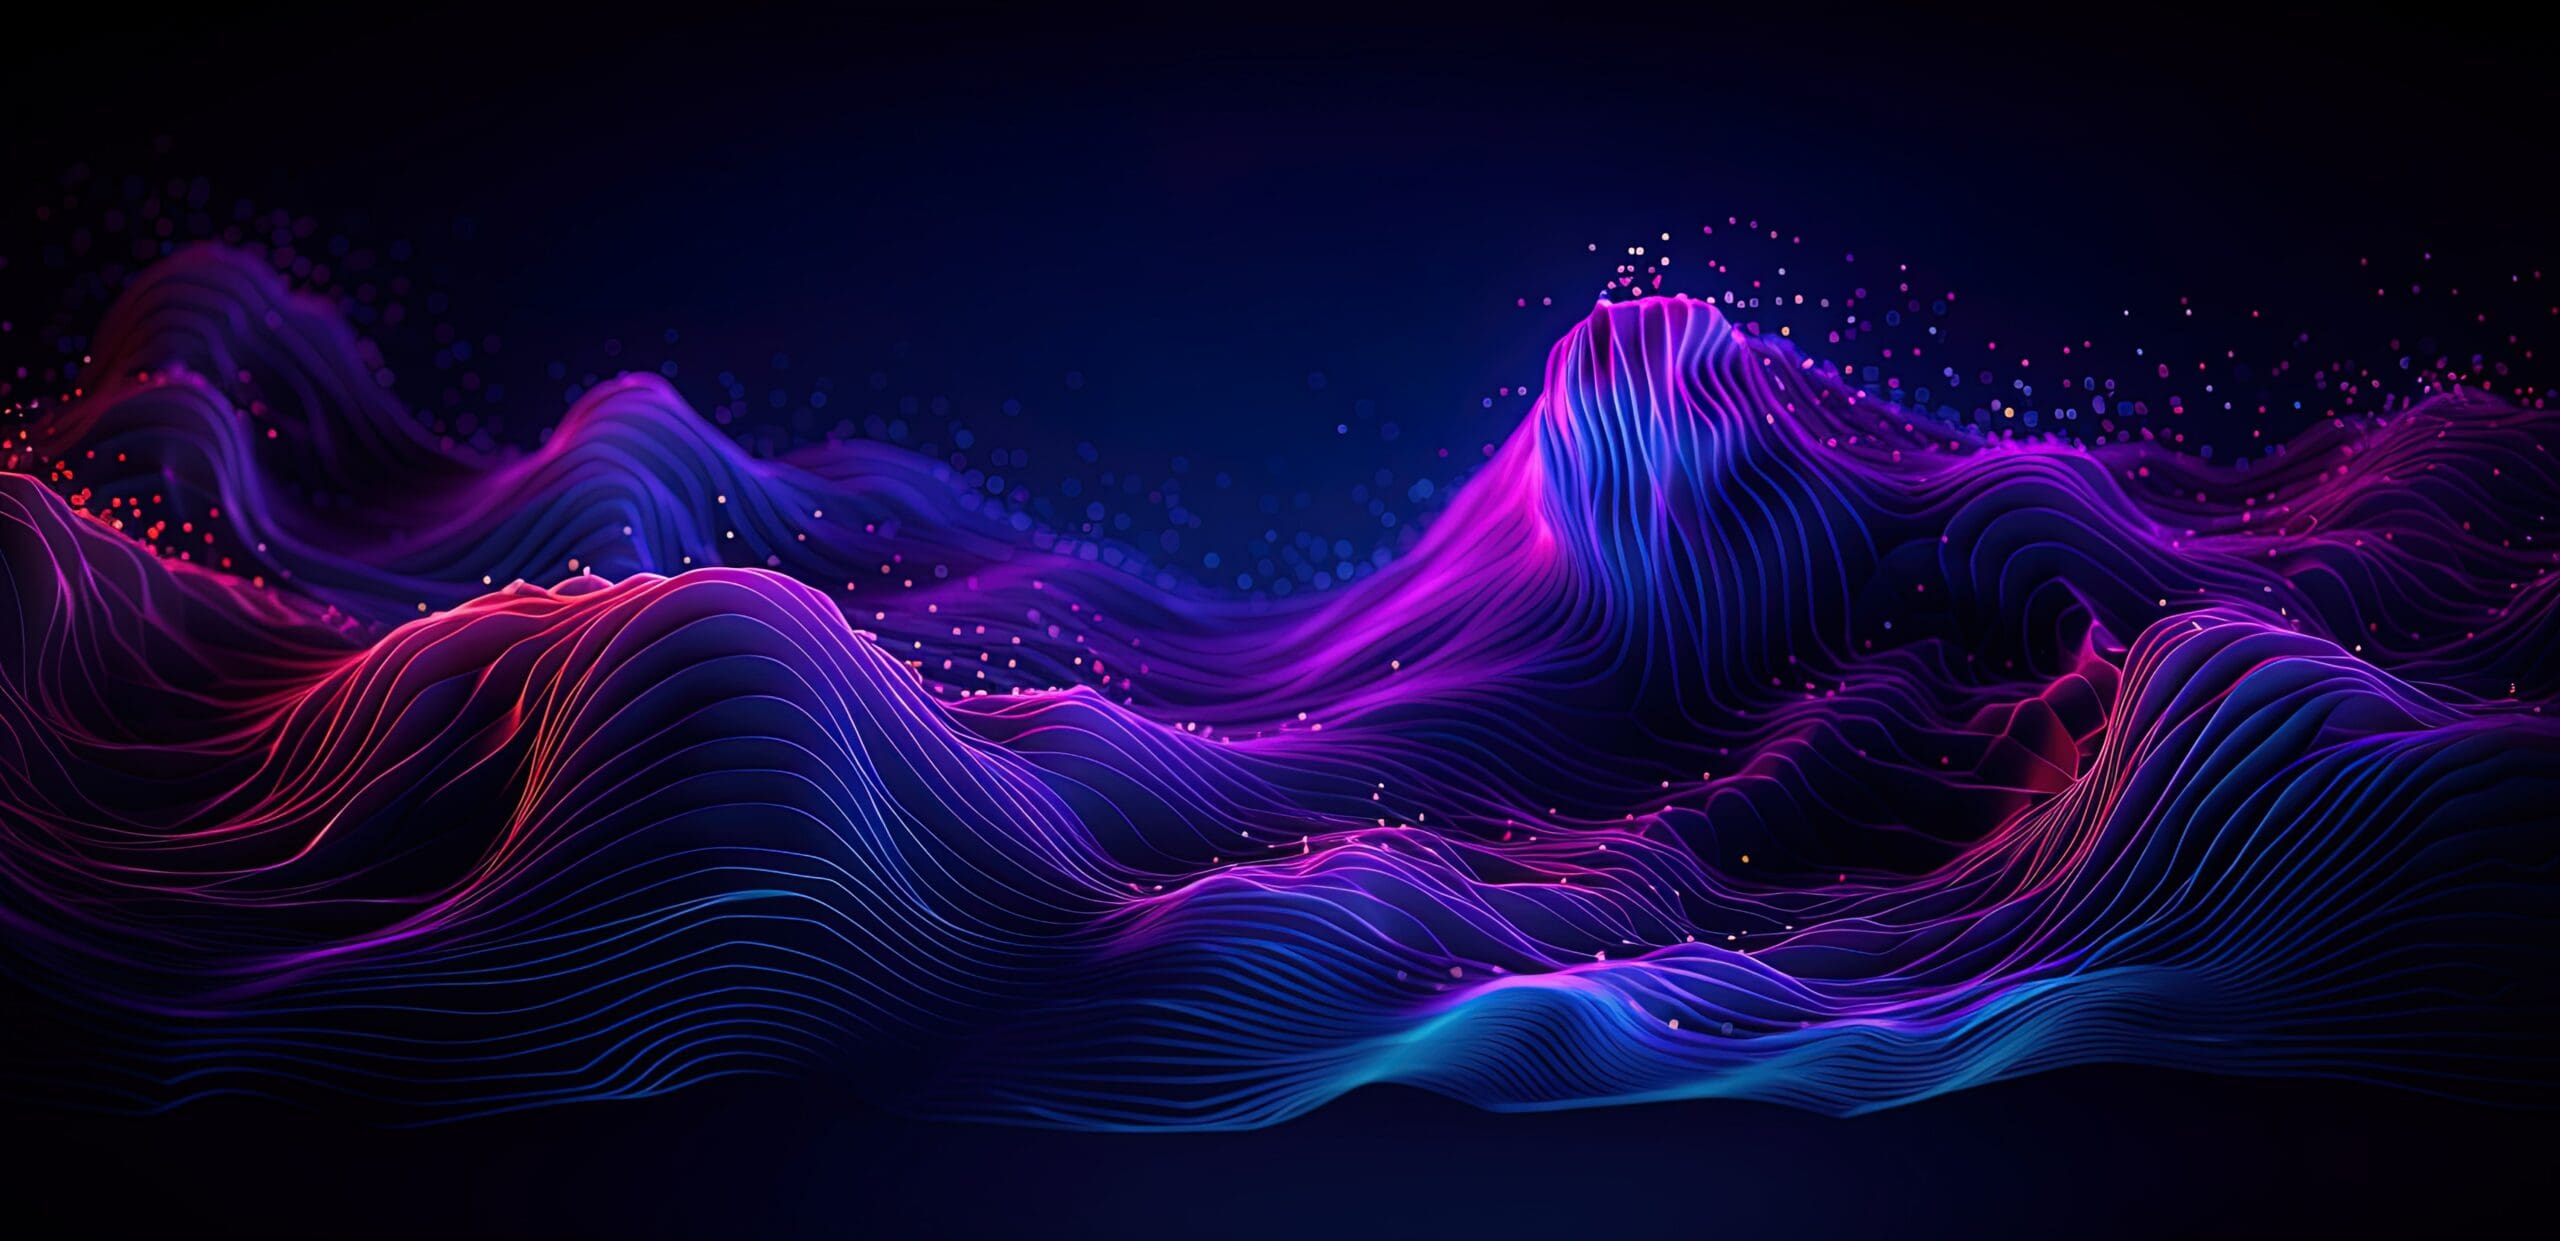 Dynamische Wellen in Neonfarben veranschaulichen den Datenfluss und die Verarbeitungskapazität der künstlichen Intelligenz.